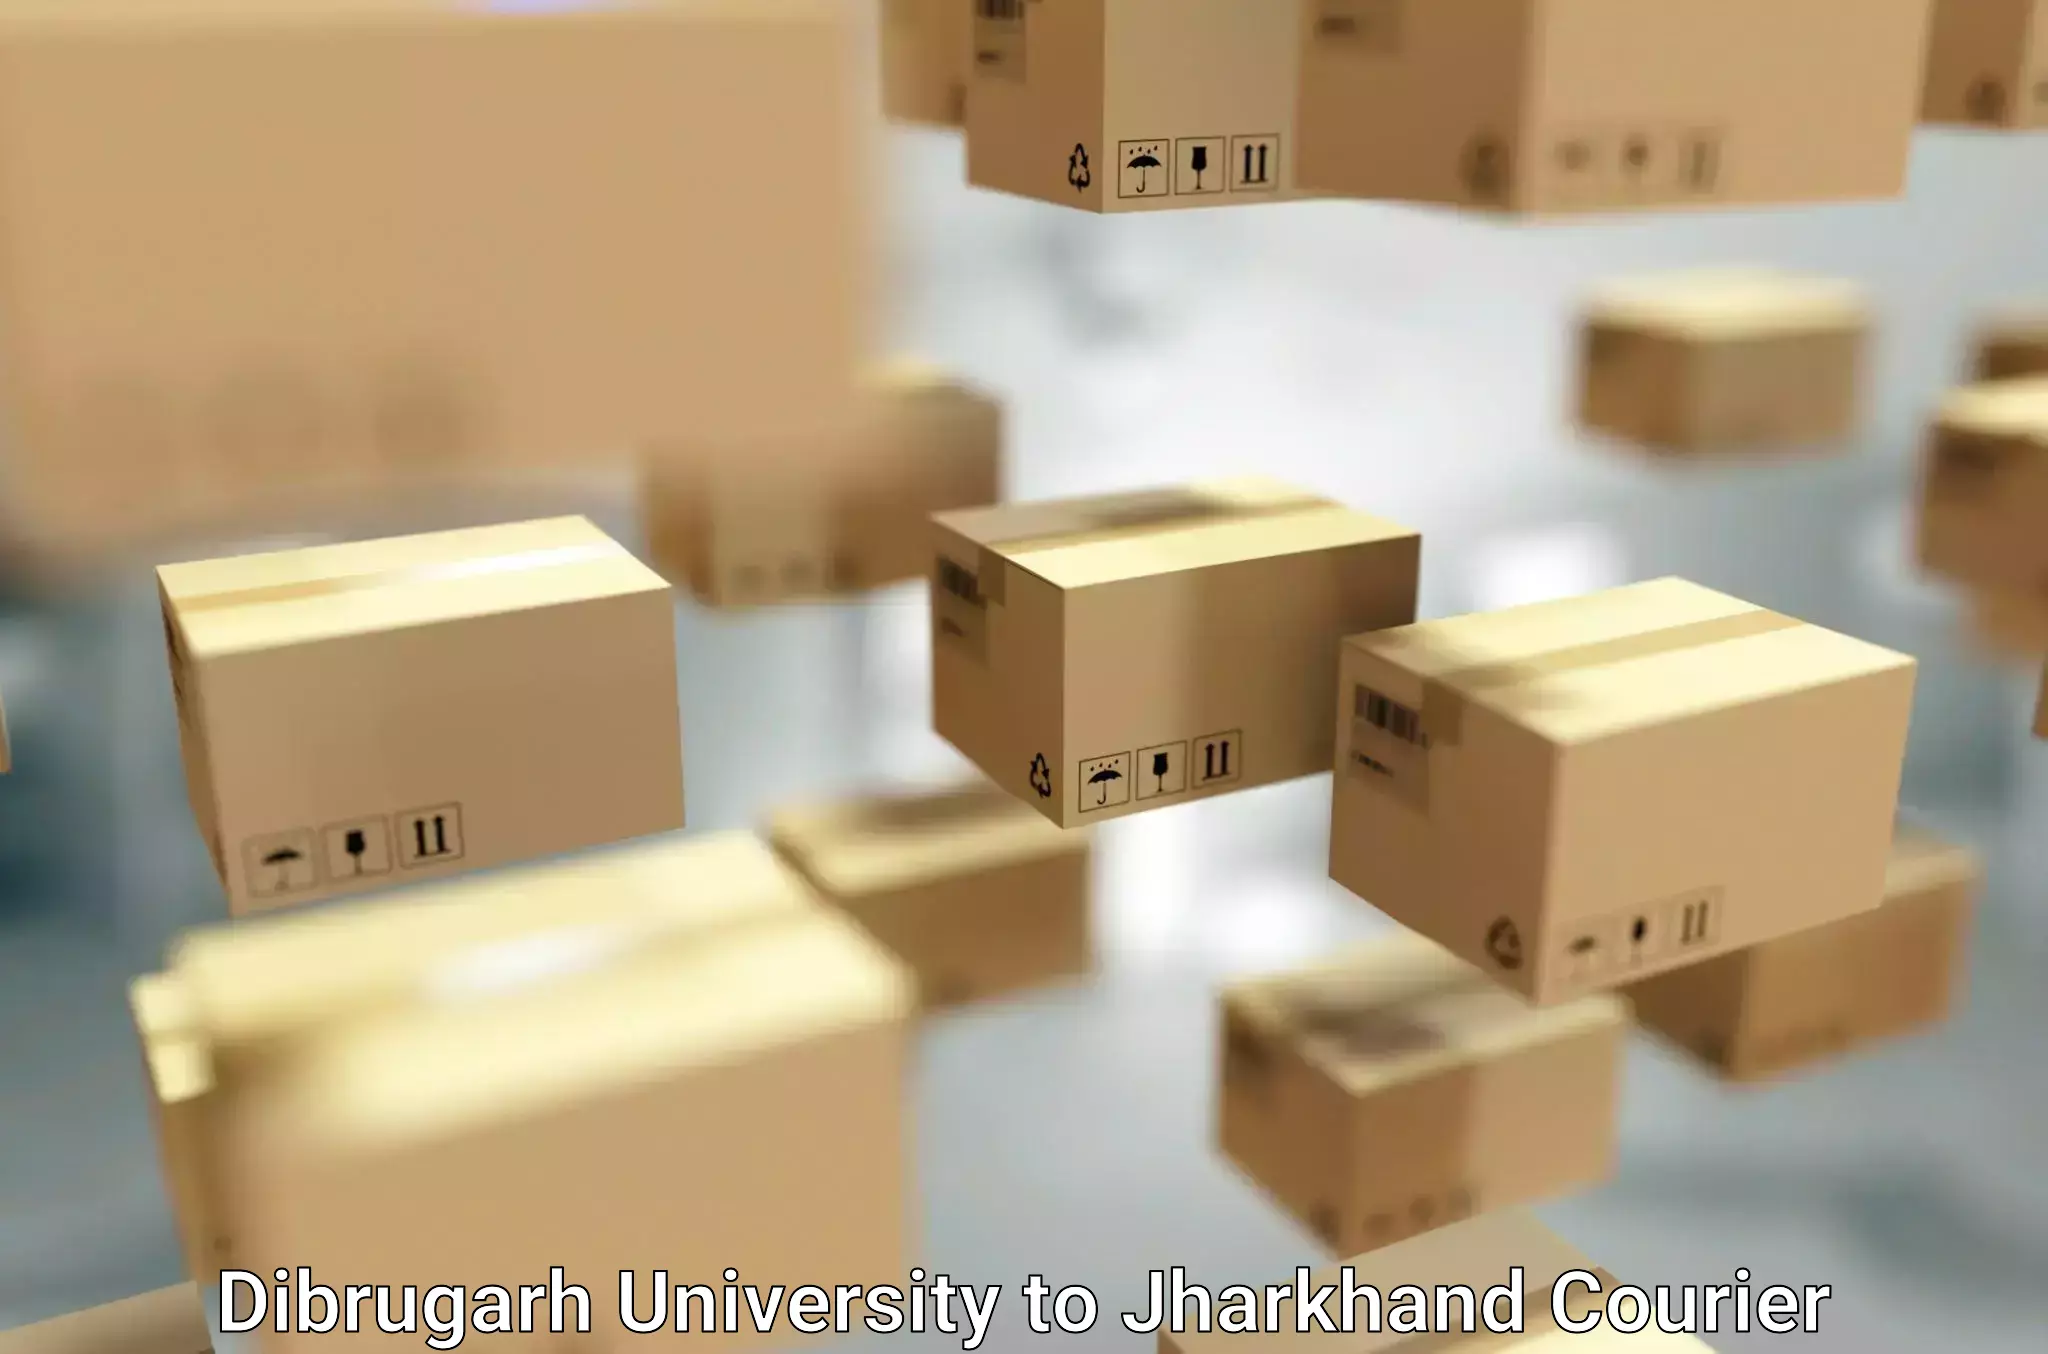 Furniture moving plans Dibrugarh University to Pakur